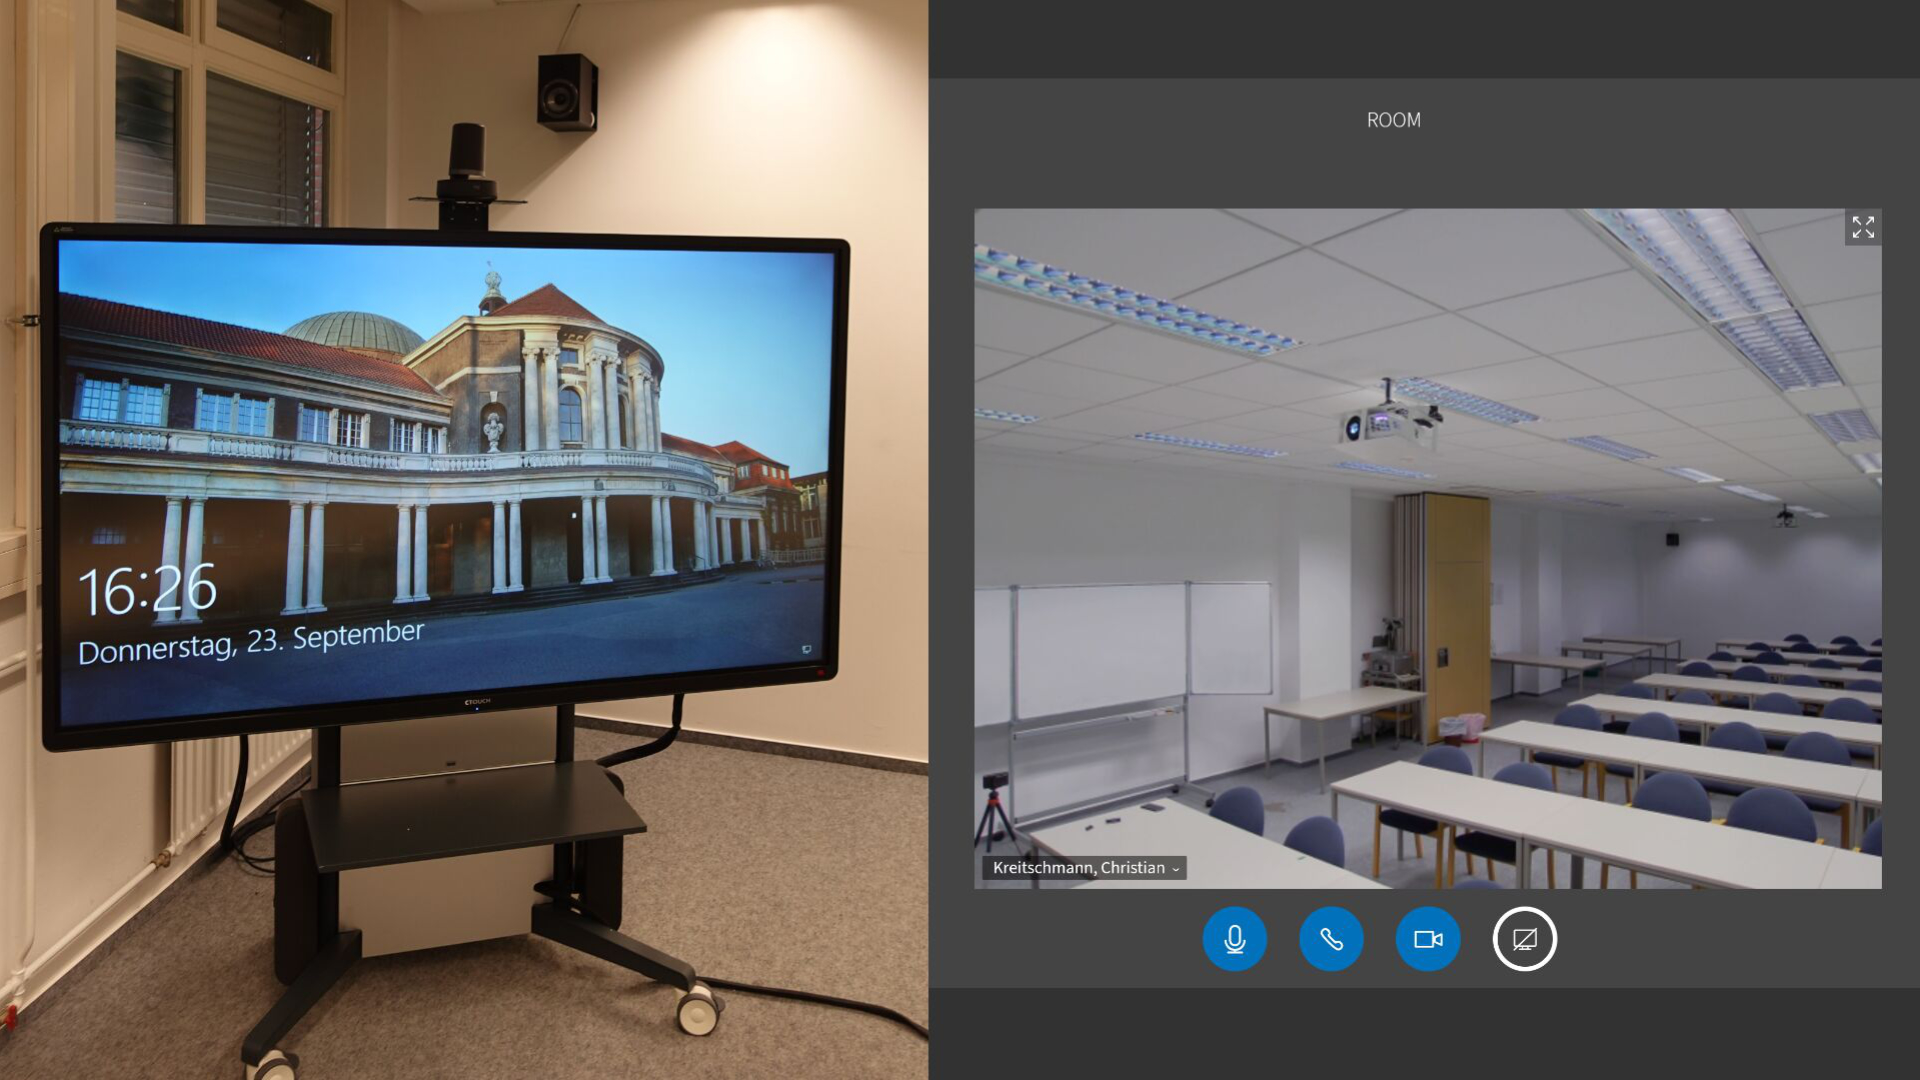 Bild einer Webkonferenzanlage im Seminarraum. Daneben das Webcam-Bild dieses Seminarraumes.